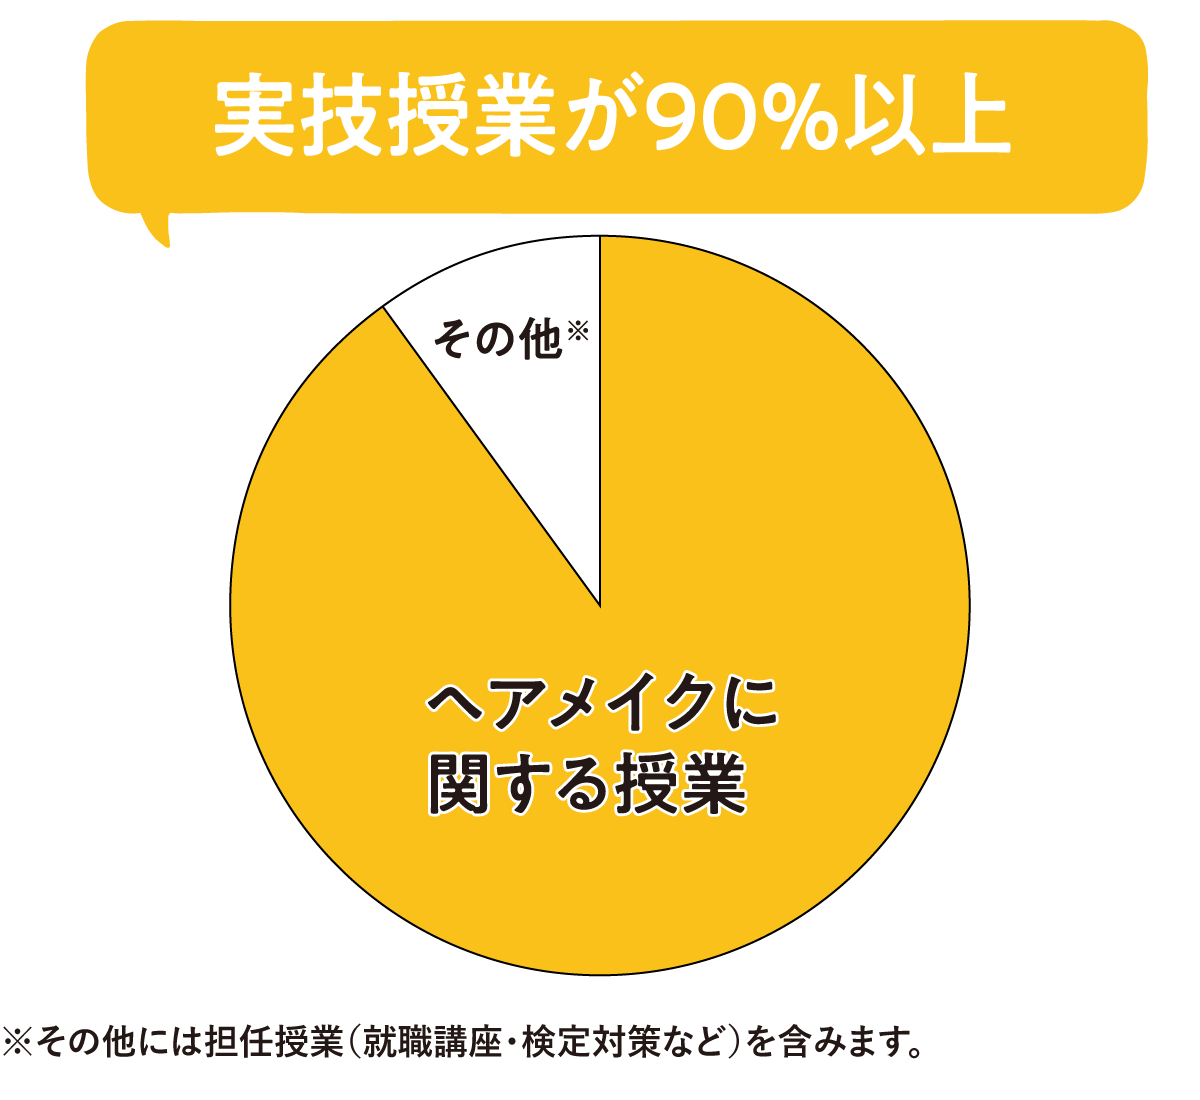 東京ベル美容の実技授業の割合グラフ